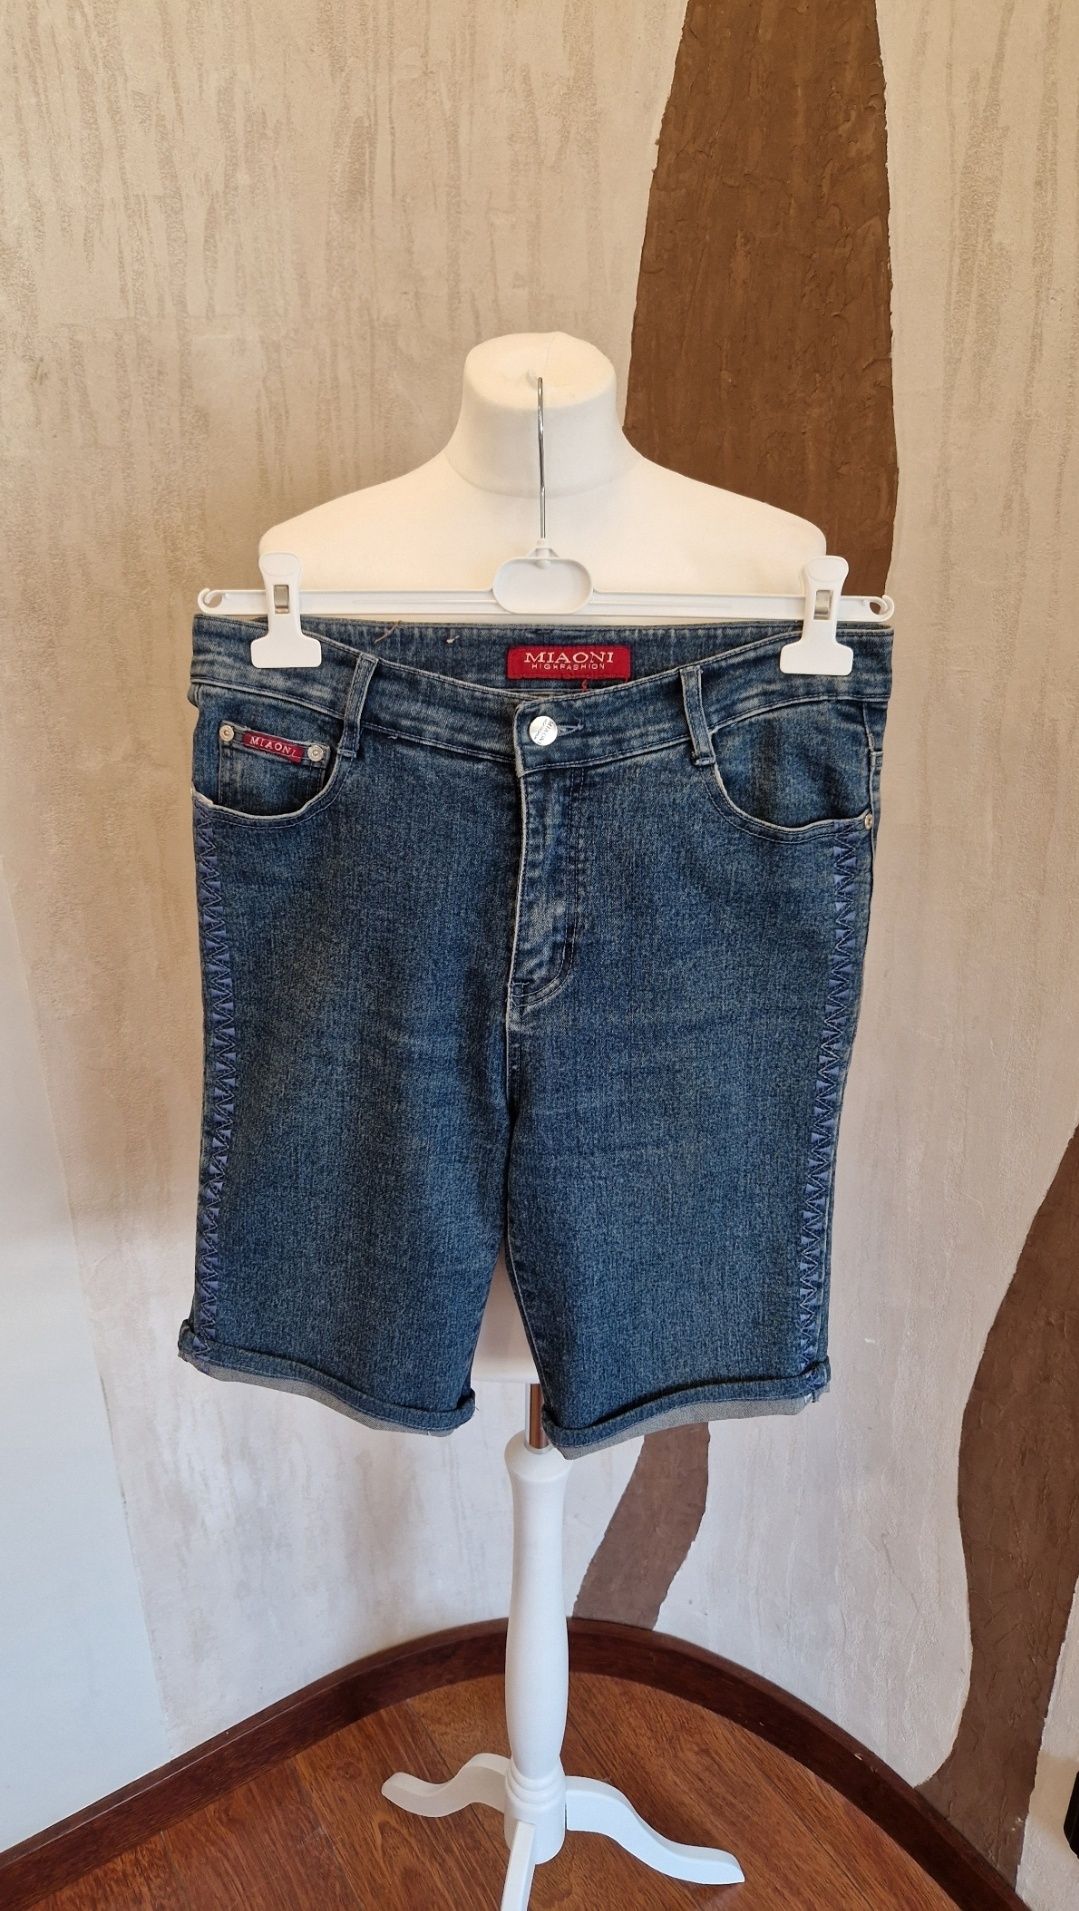 Krótkie spodenki damskie jeans Miaoni